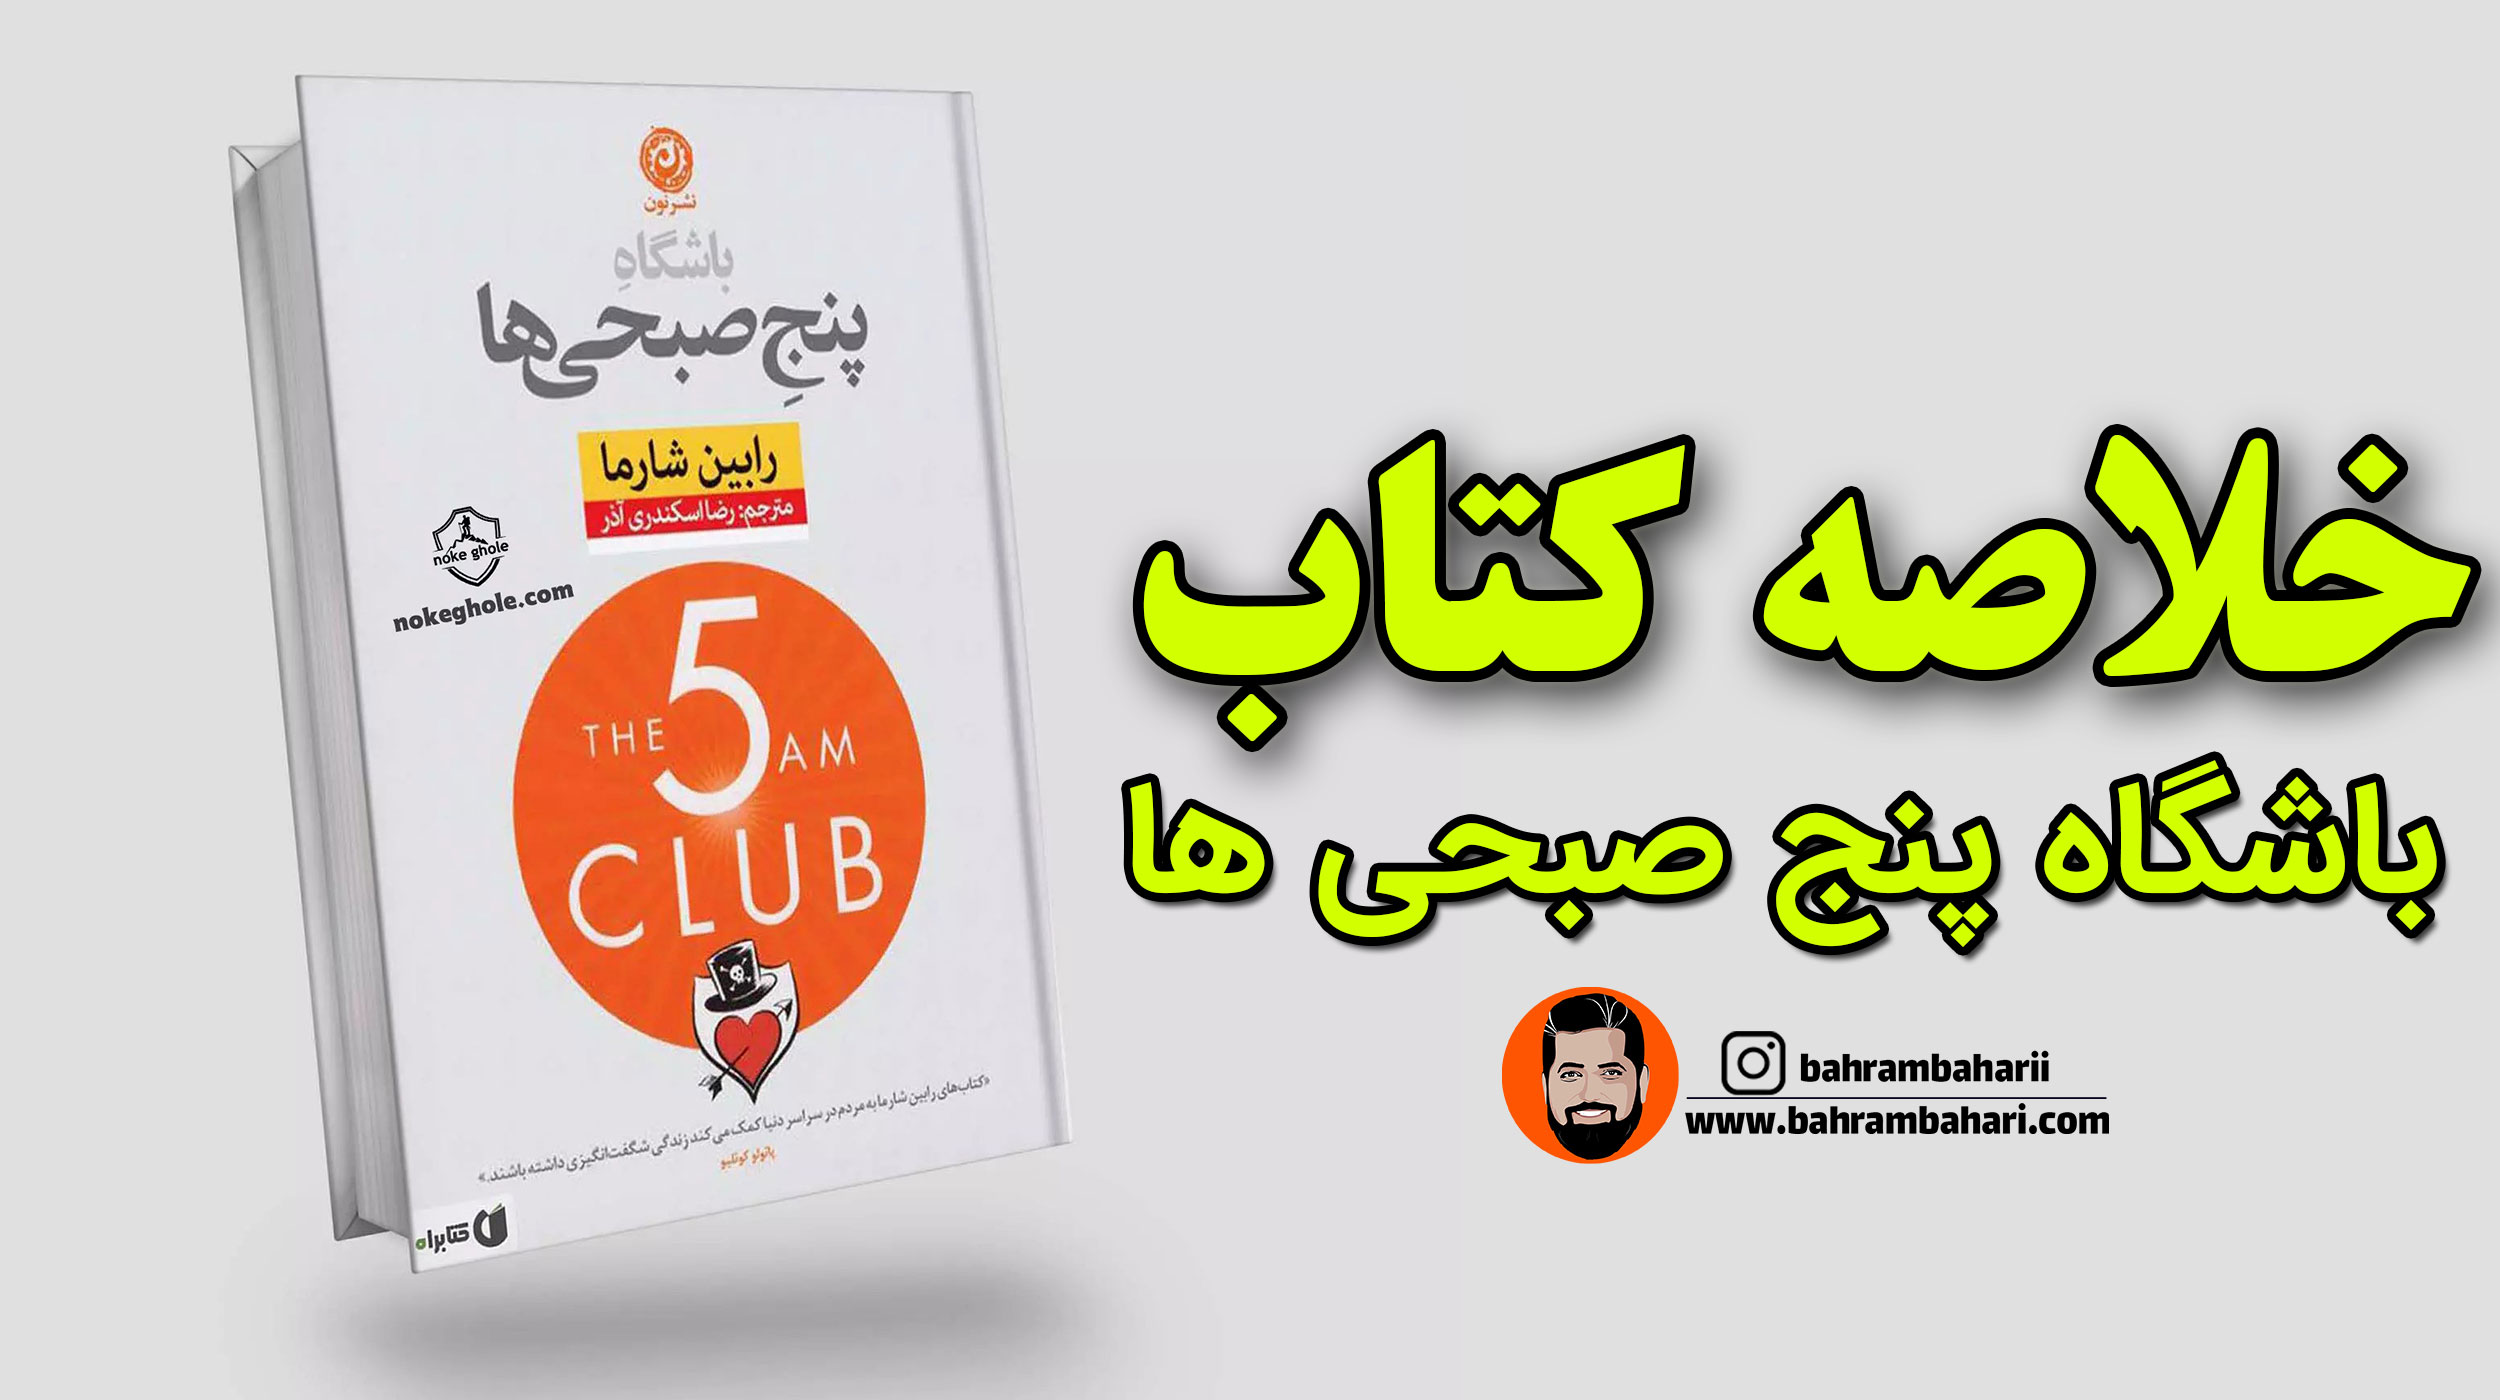 خلاصه کتاب باشگاه پنج صبحی ها وبسایت رسمی بهرام بهاری